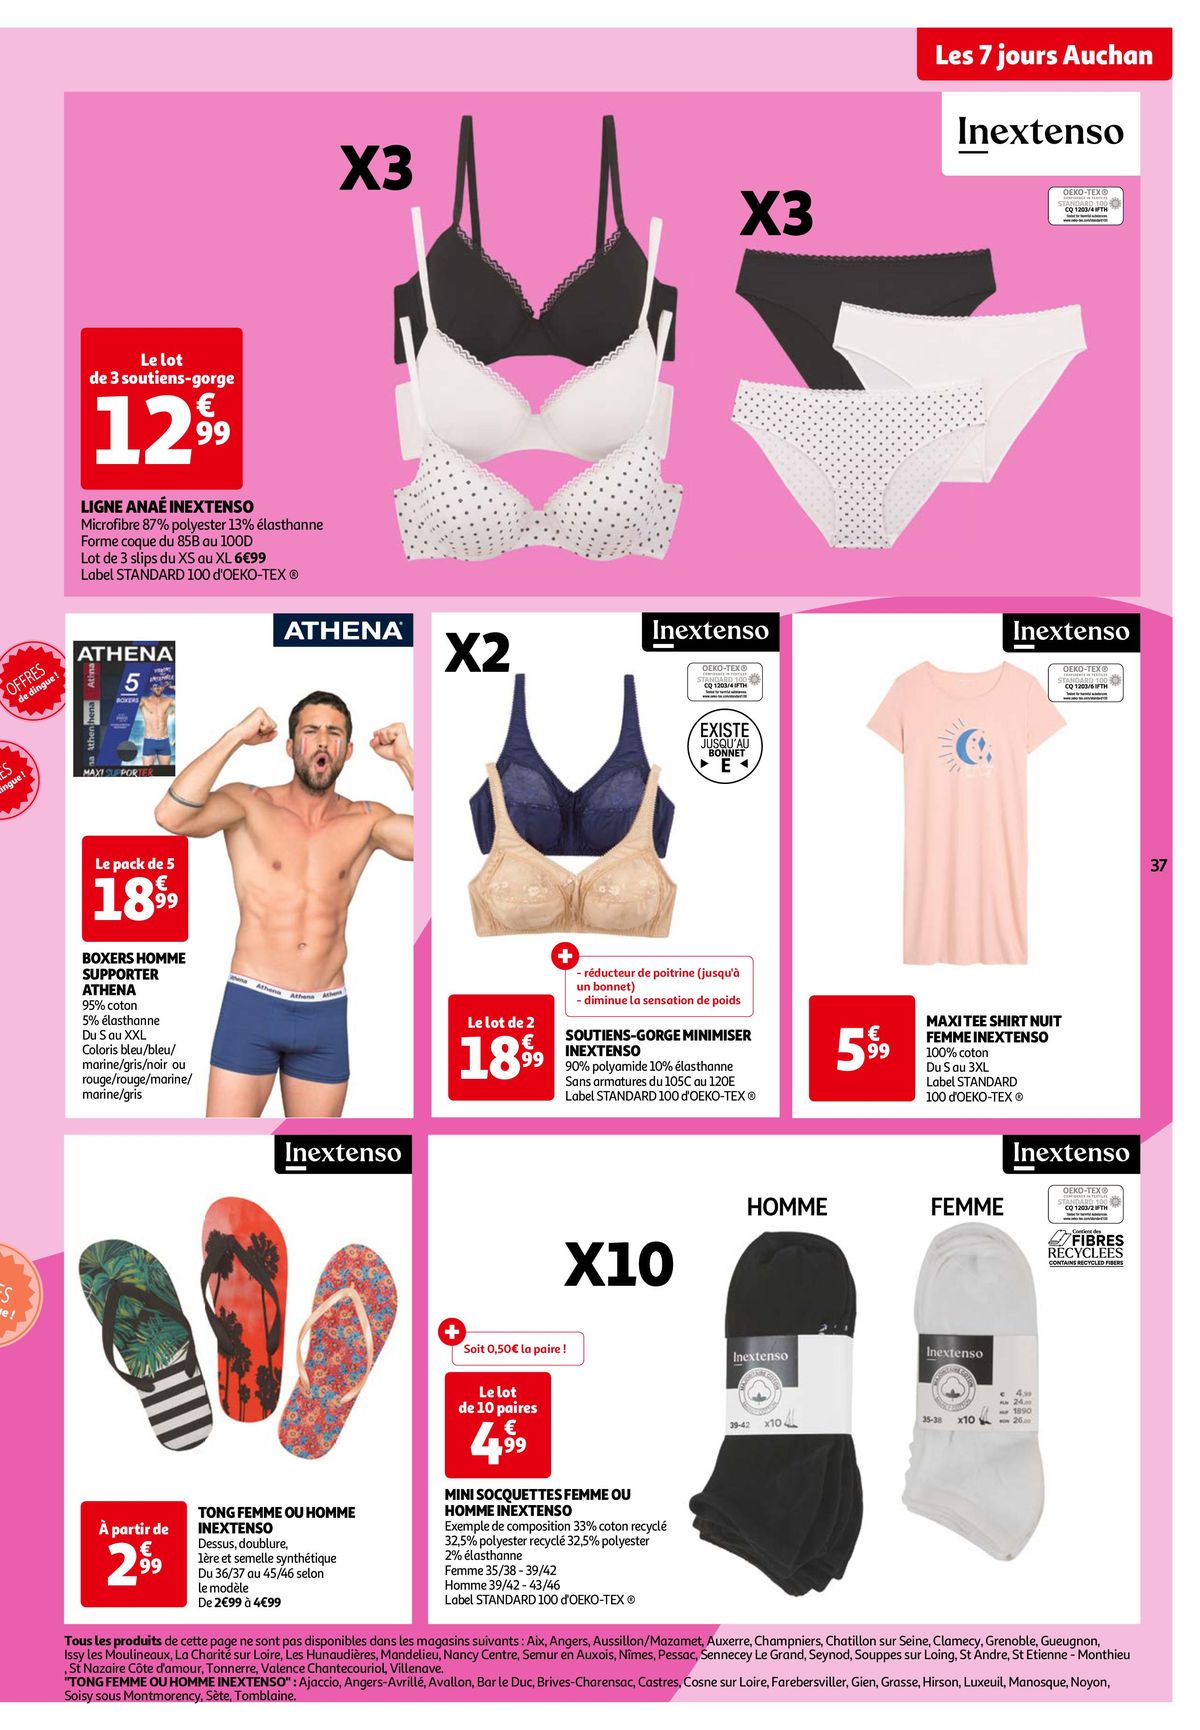 Catalogue Les 7 jours Auchan, c'est maintenant !, page 00037